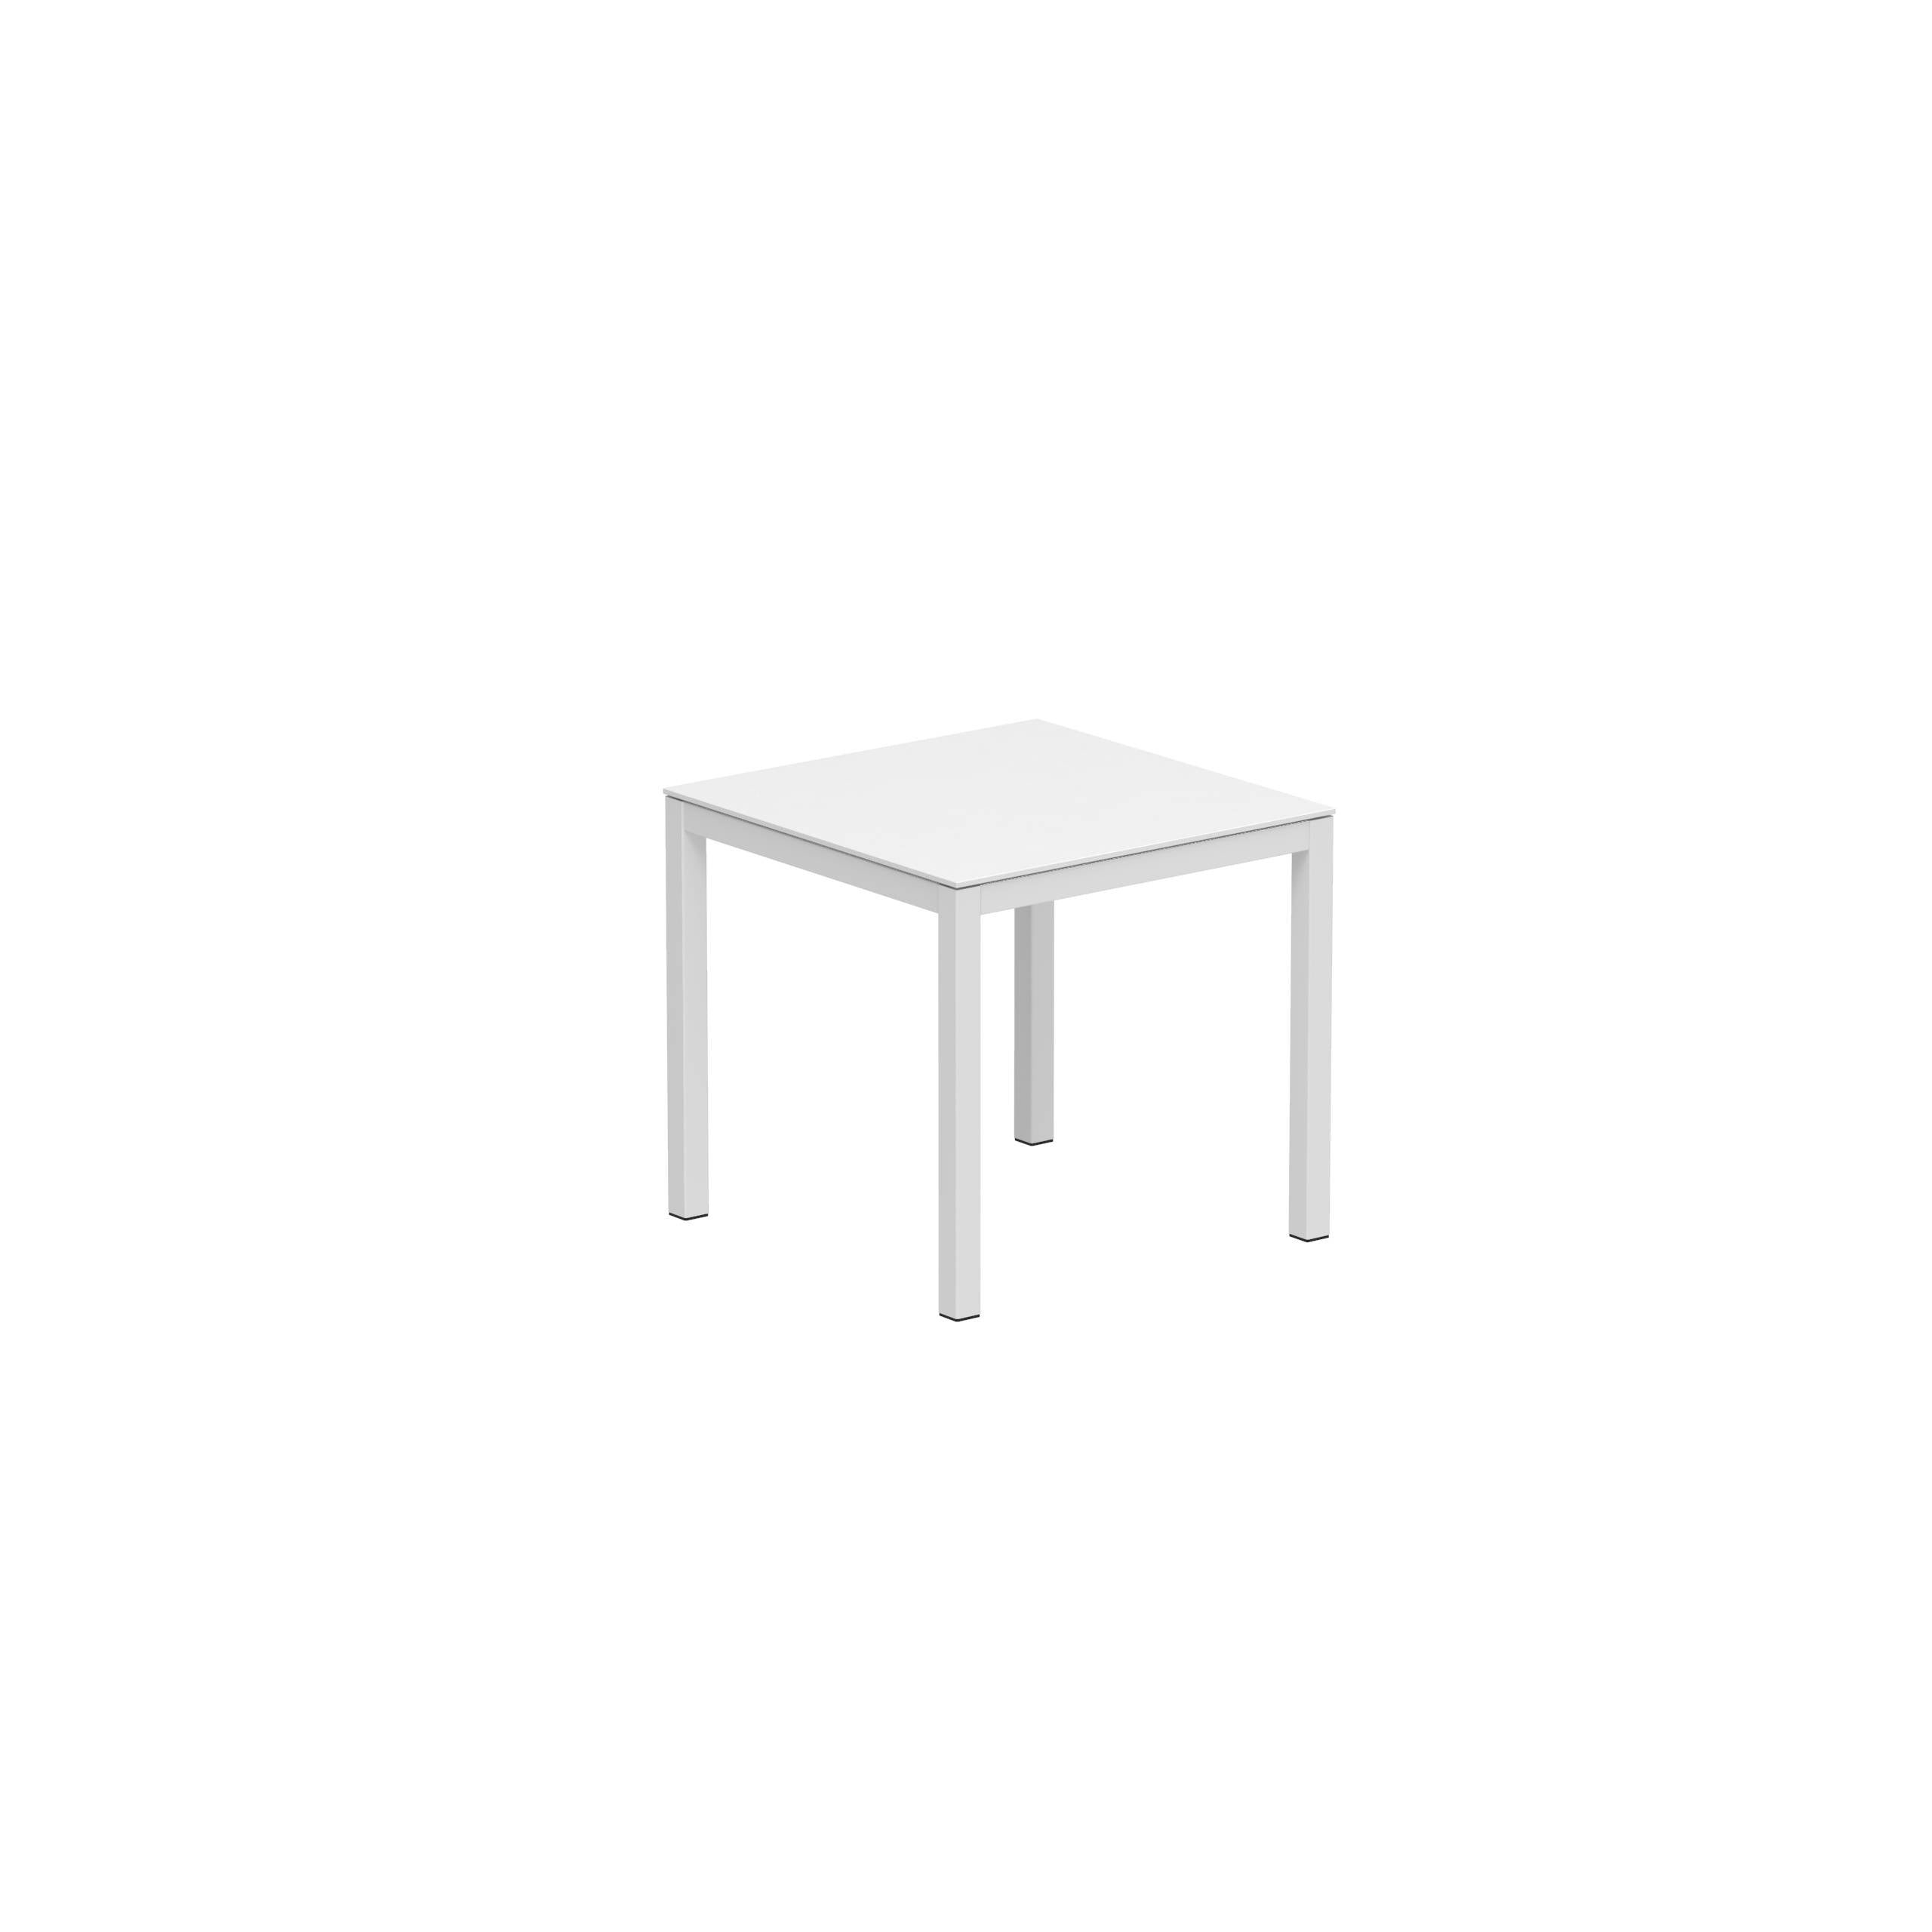 Taboela Table 80x80cm White + Ceramic Top In White